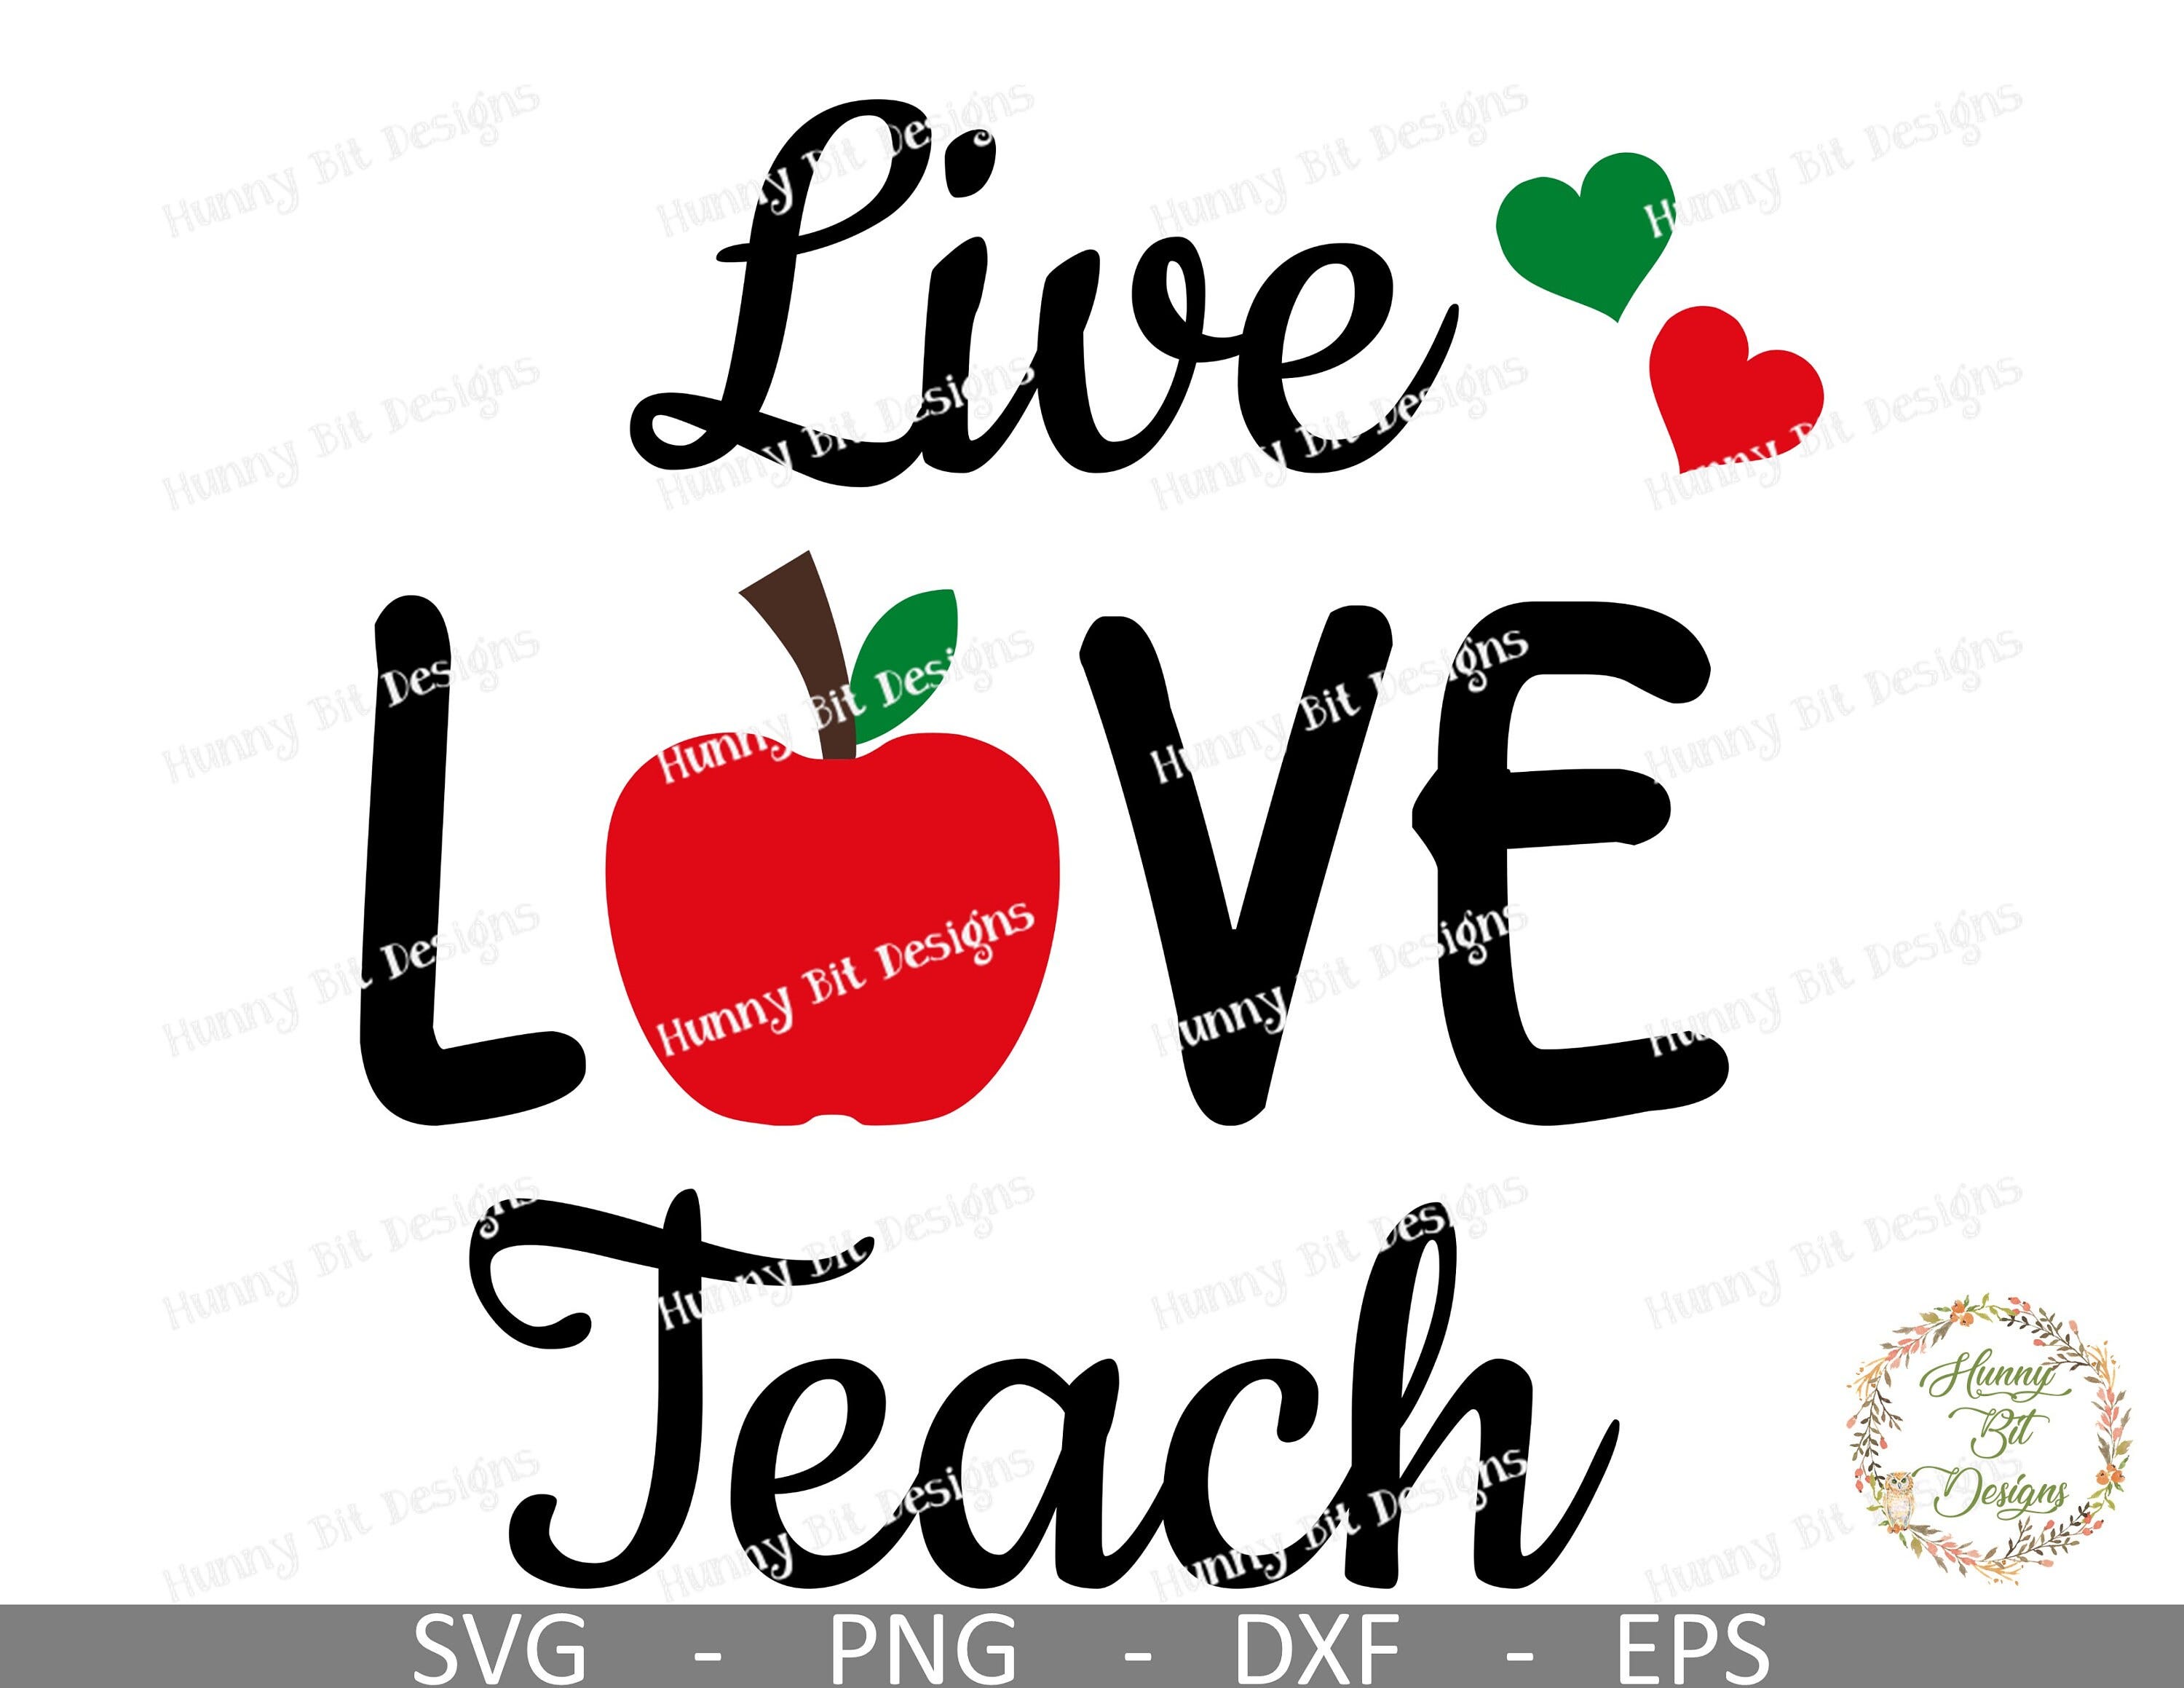 Teacher SVG, Live Love Teach, Apple SVG, Teacher Shirt, Teacher Apple File, Cut File, Vector File, Cricut Design Space, Silhouette Studio